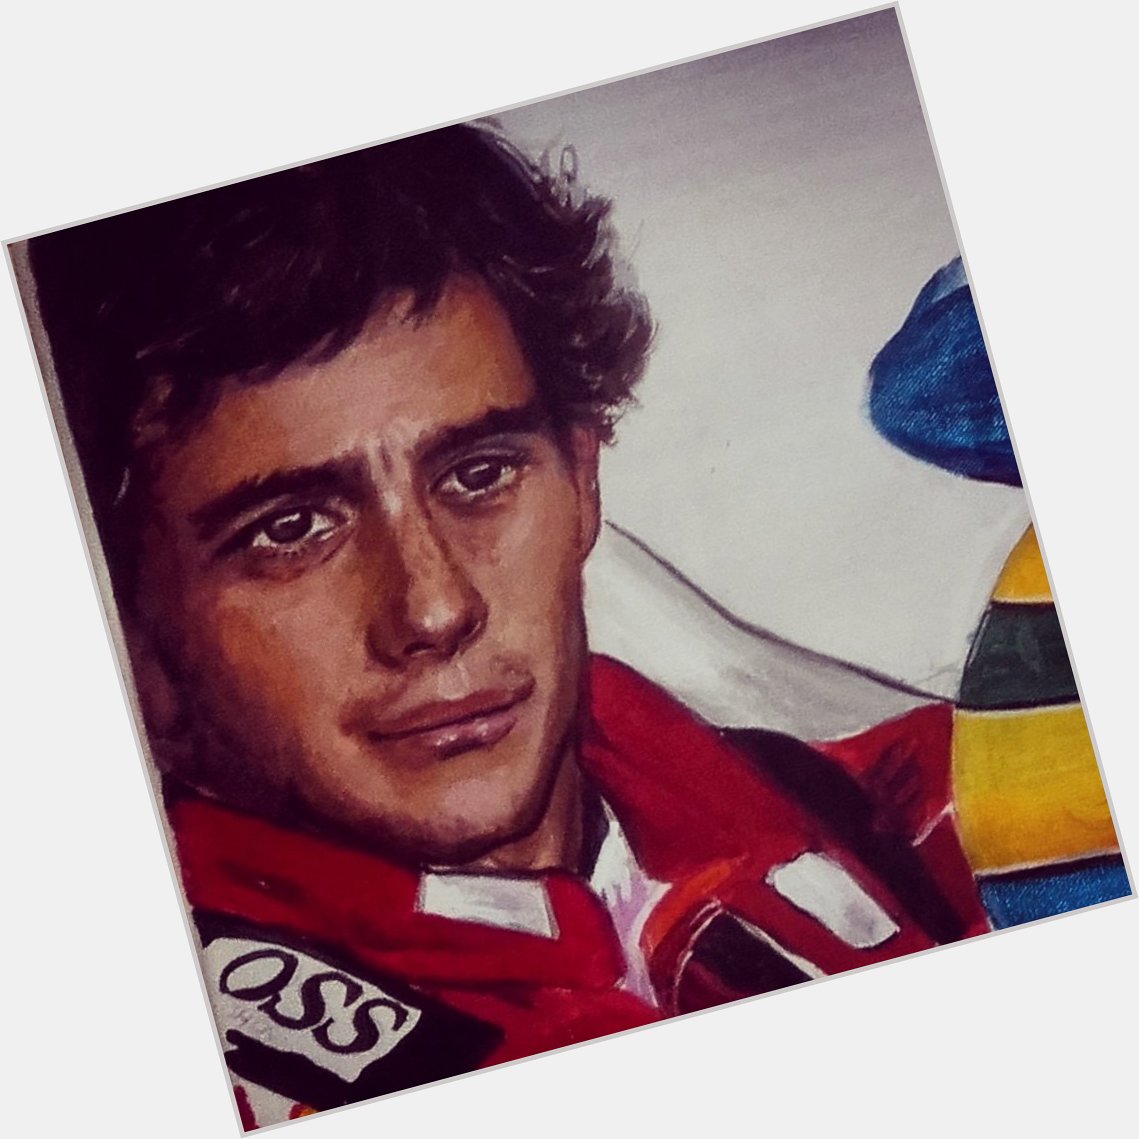 Happy Birthday Ayrton Senna! Never forgotten 